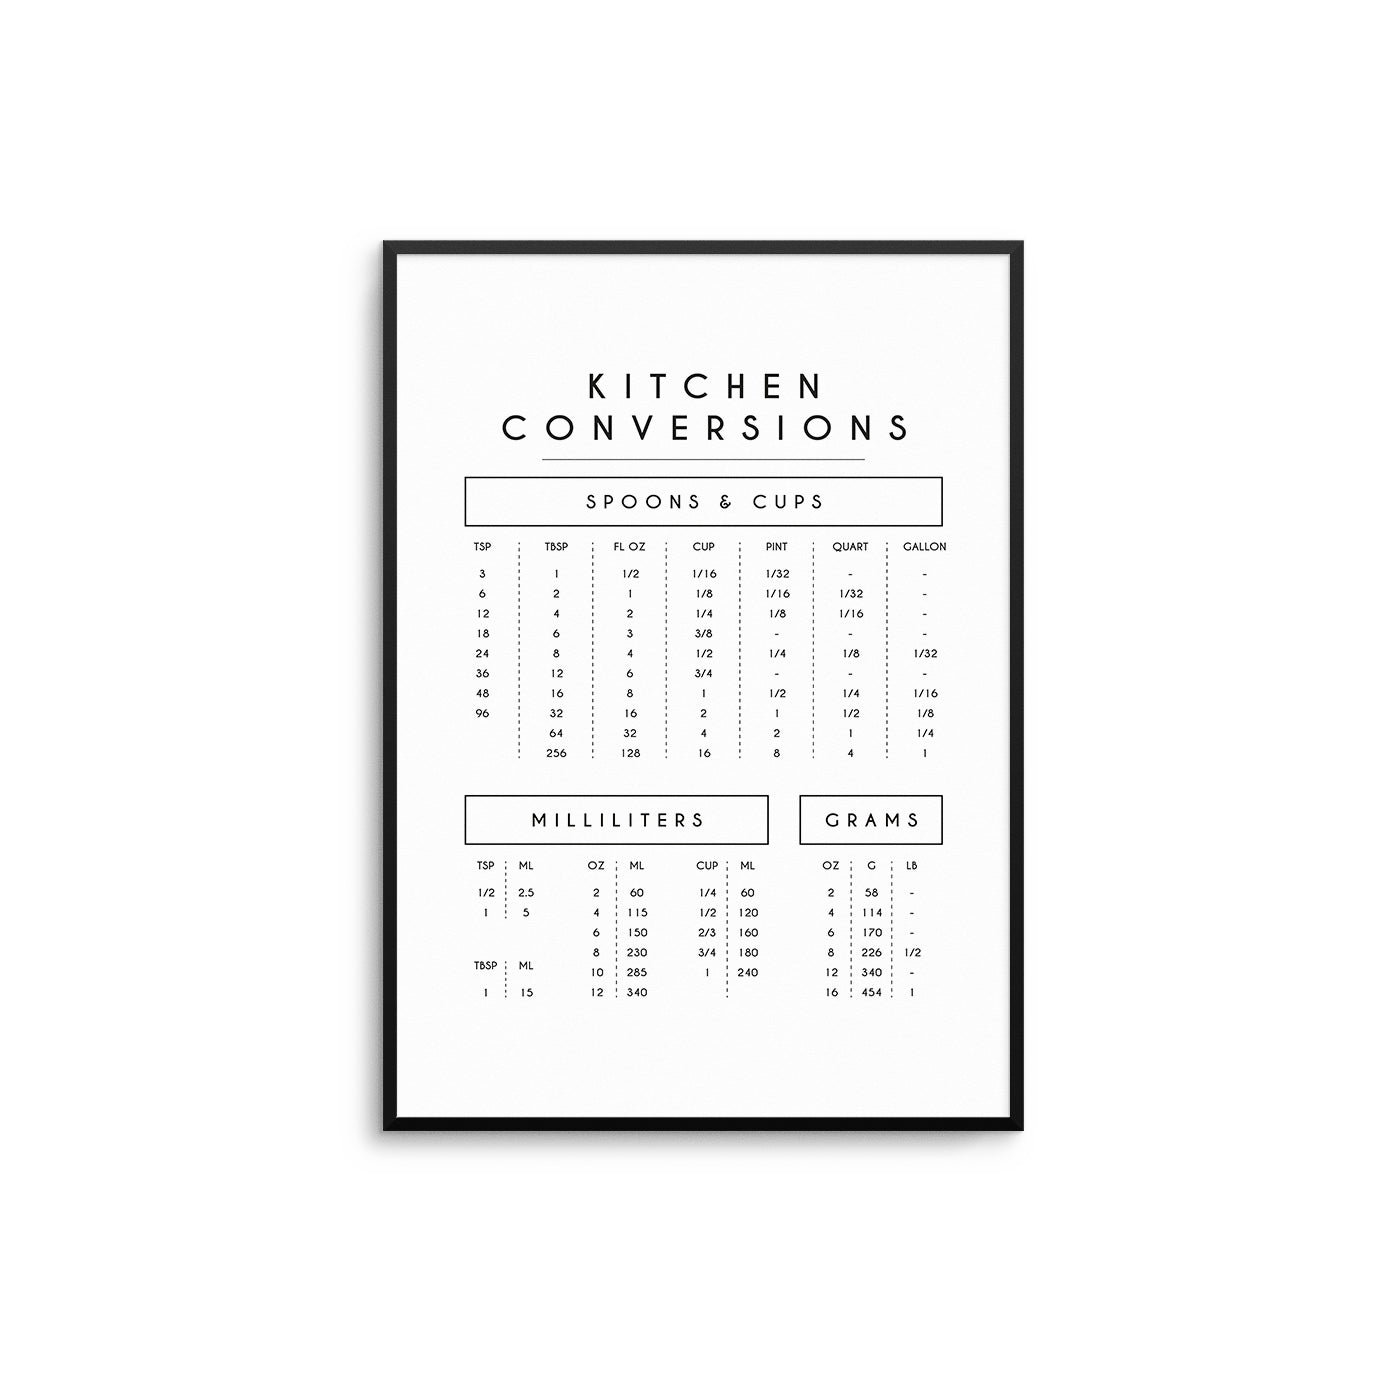 Kitchen Conversions - D'Luxe Prints